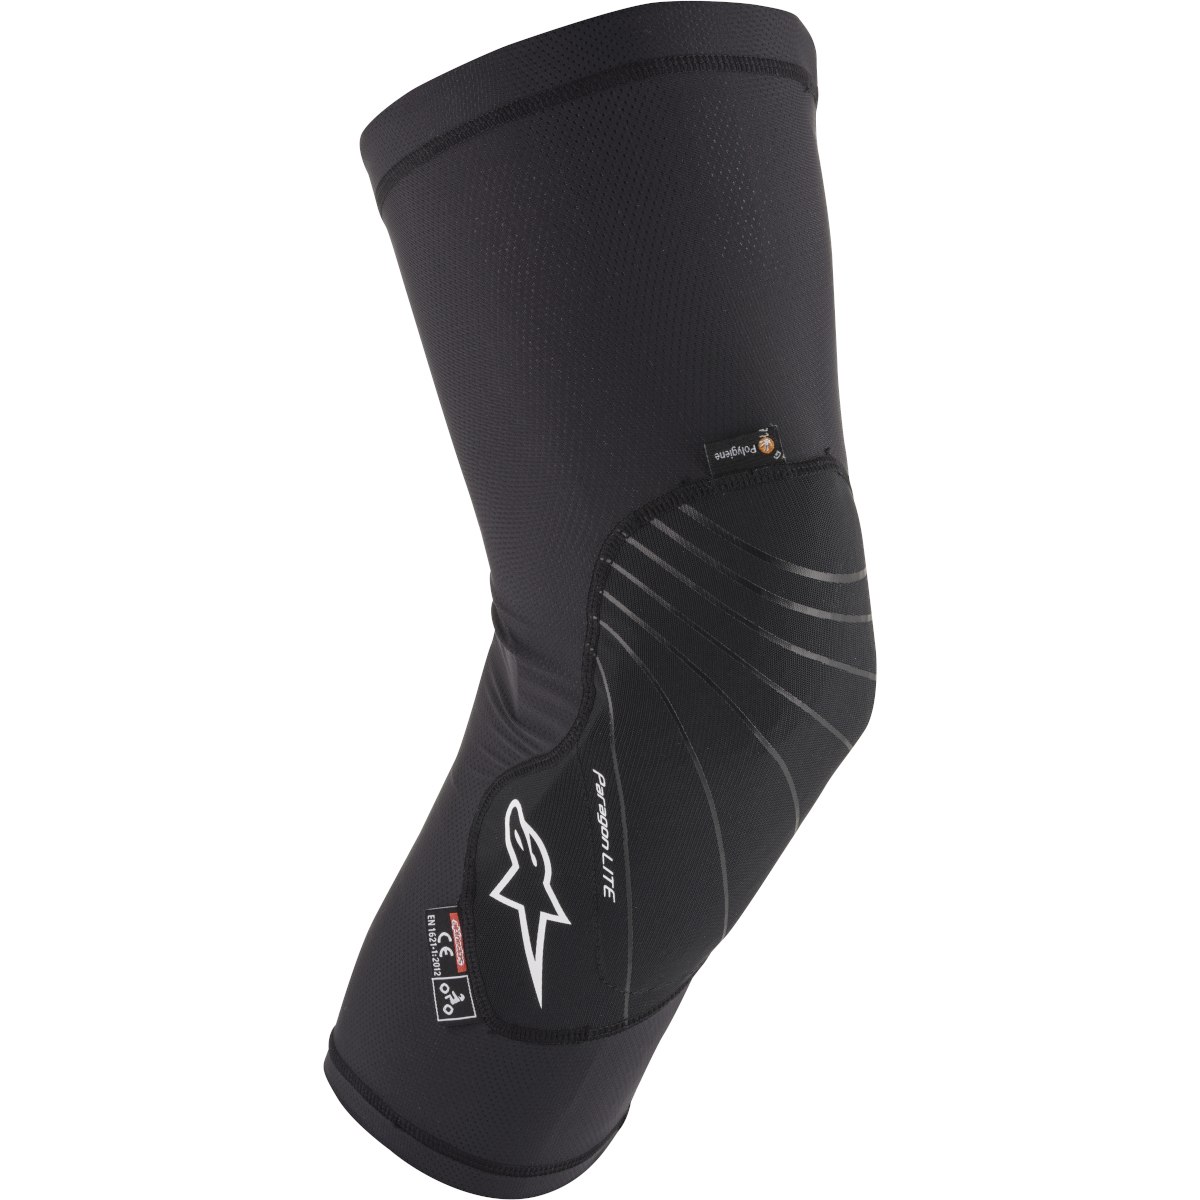 Produktbild von Alpinestars Paragon Lite Knieprotektor - schwarz